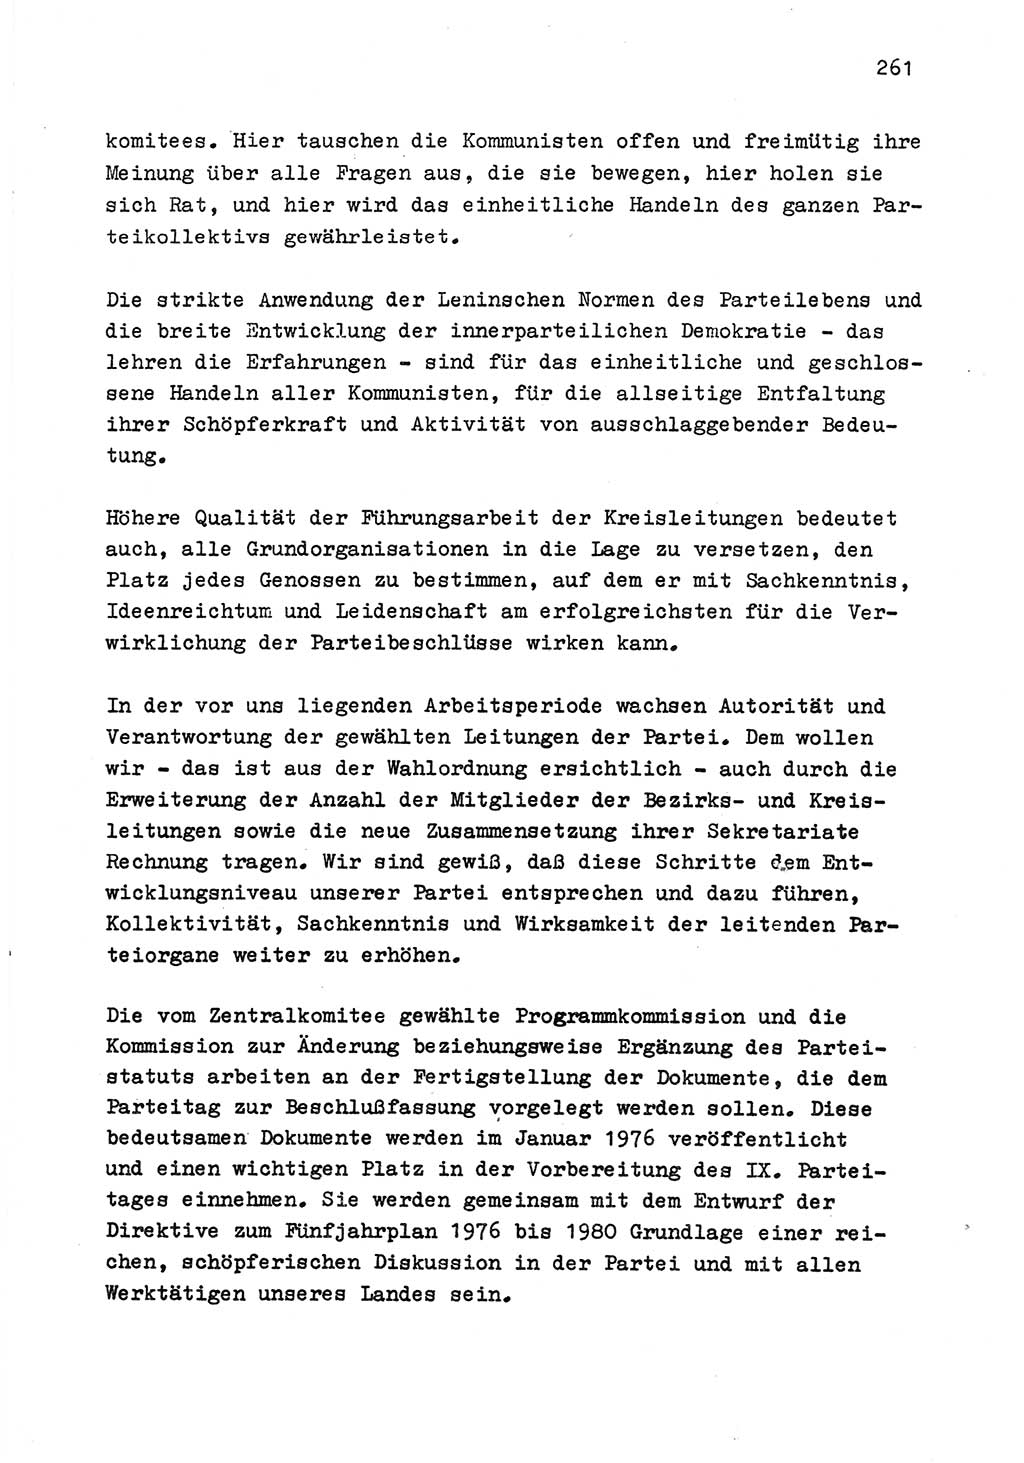 Zu Fragen der Parteiarbeit [Sozialistische Einheitspartei Deutschlands (SED) Deutsche Demokratische Republik (DDR)] 1979, Seite 261 (Fr. PA SED DDR 1979, S. 261)